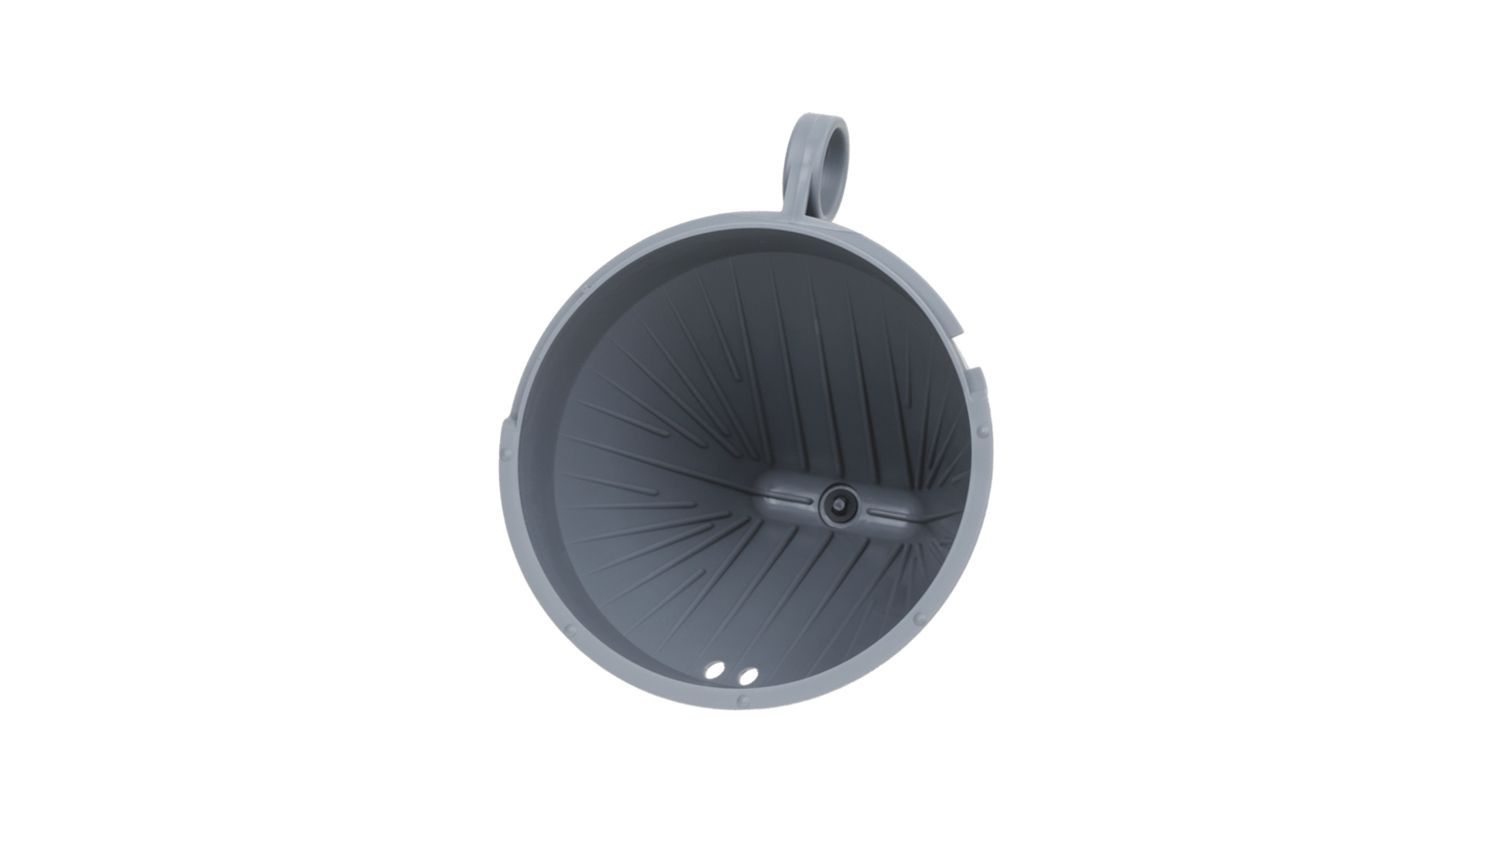 Conical Filter Holder for Bosch Siemens Coffee Makers - 00647058 BSH - Bosch / Siemens